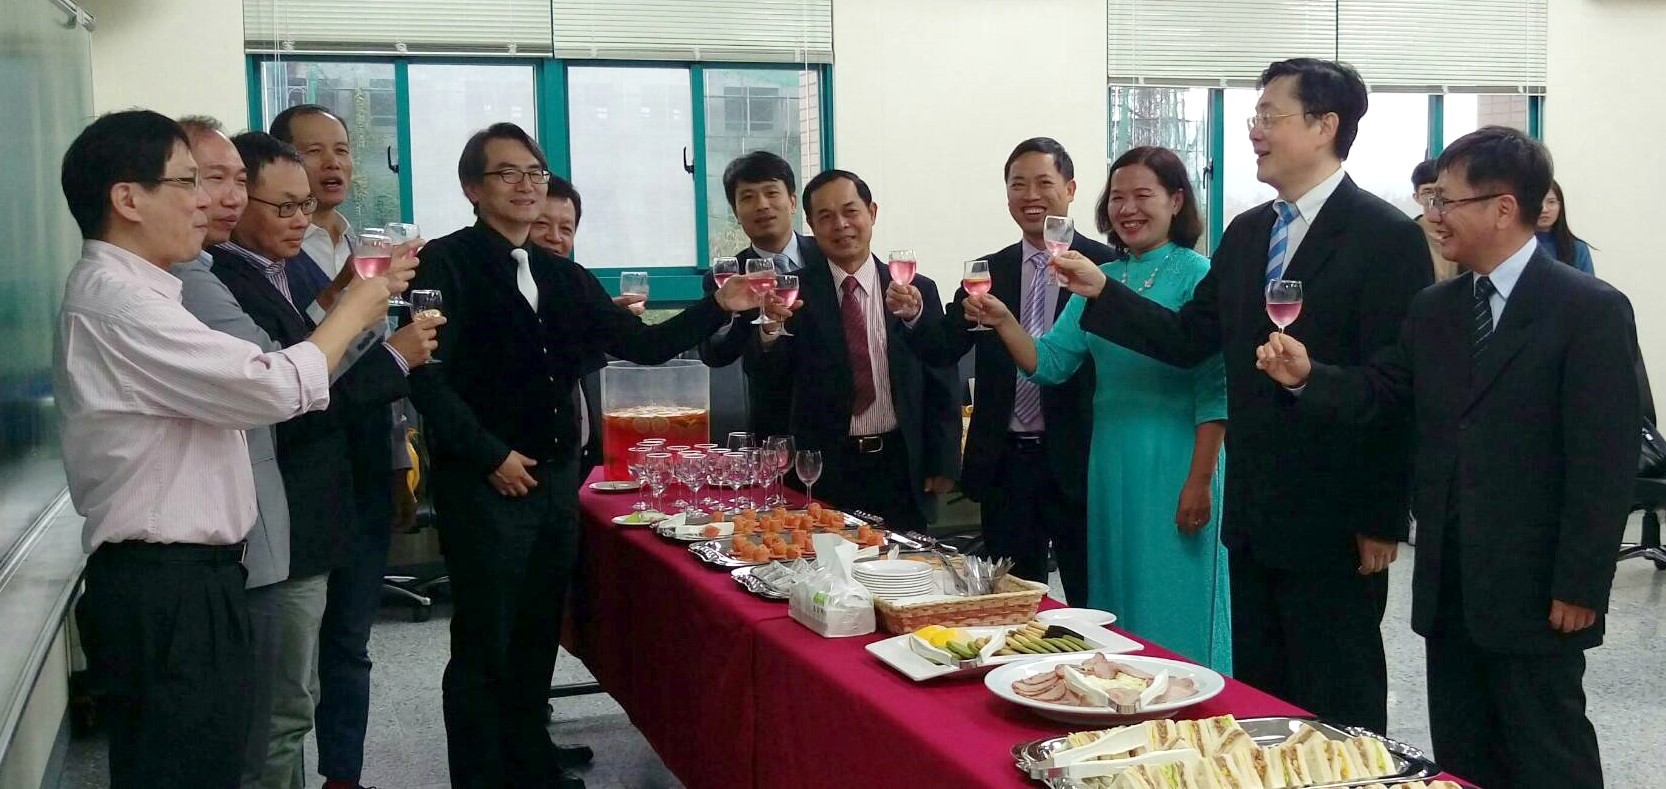 與會貴賓舉杯祝賀「越南臺灣研究中心」揭牌成立